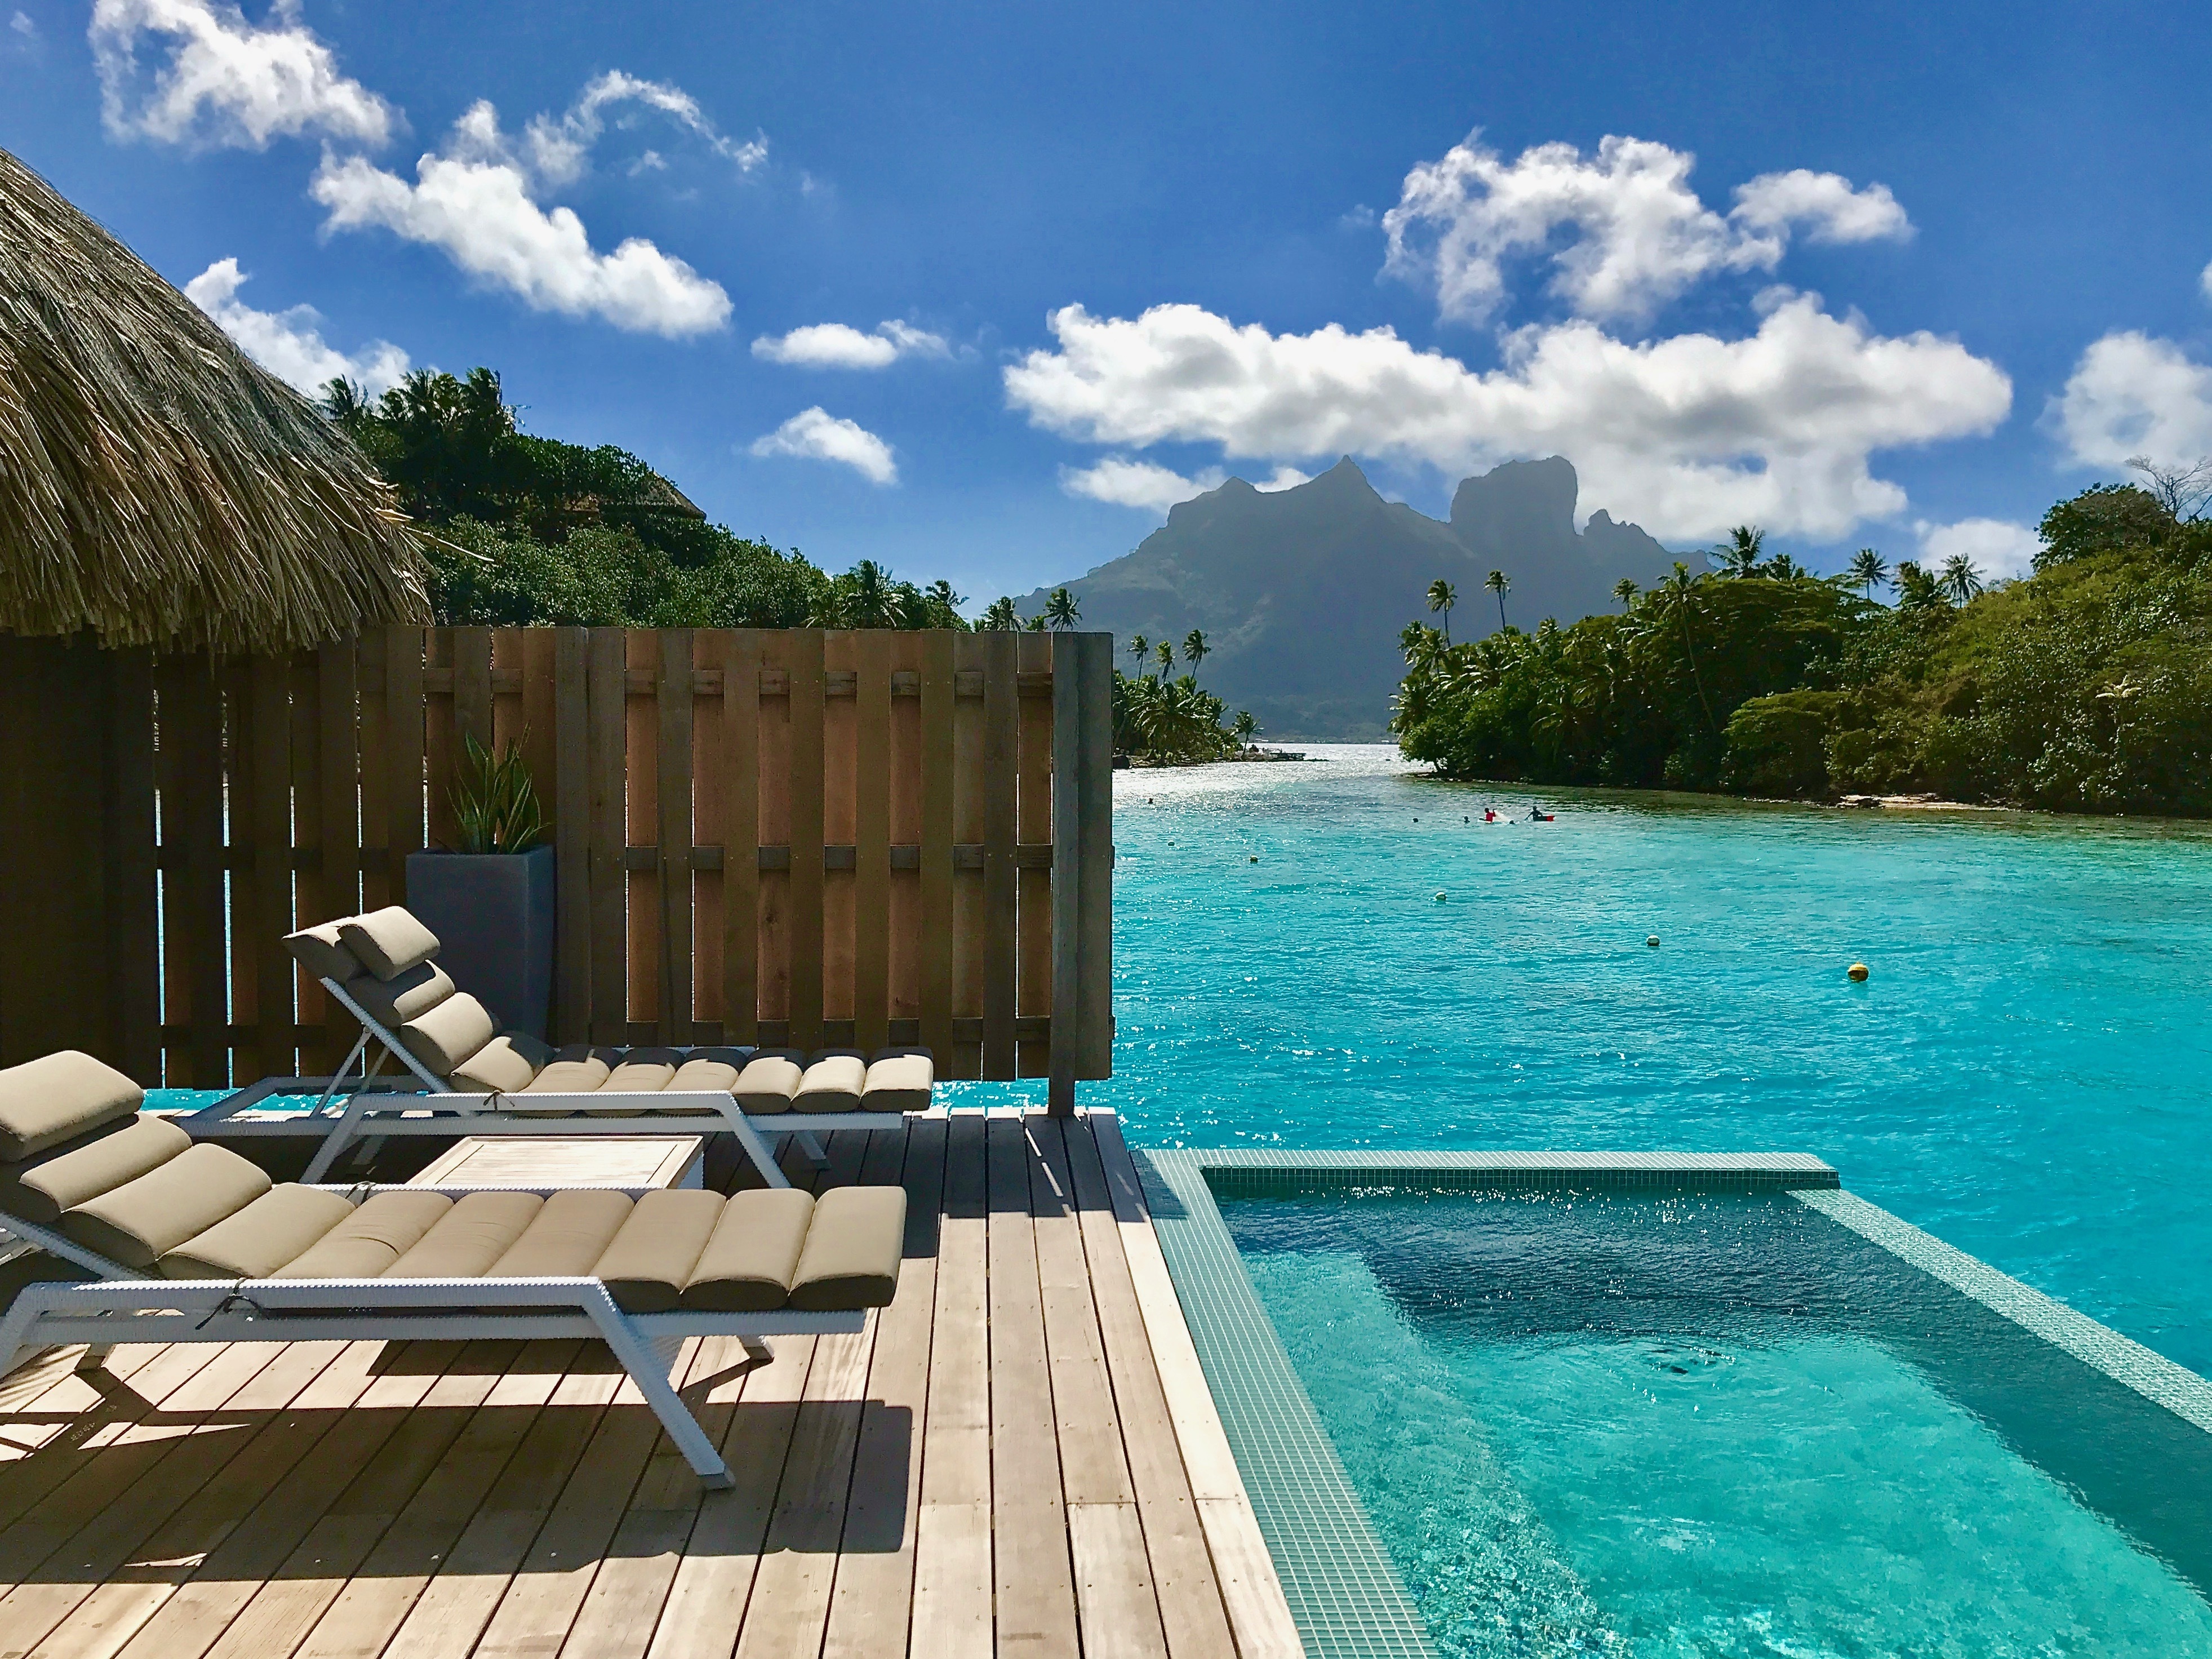 Une terrasse ensoleillée avec une piscine donnant sur la plage | Source : Shutterstock